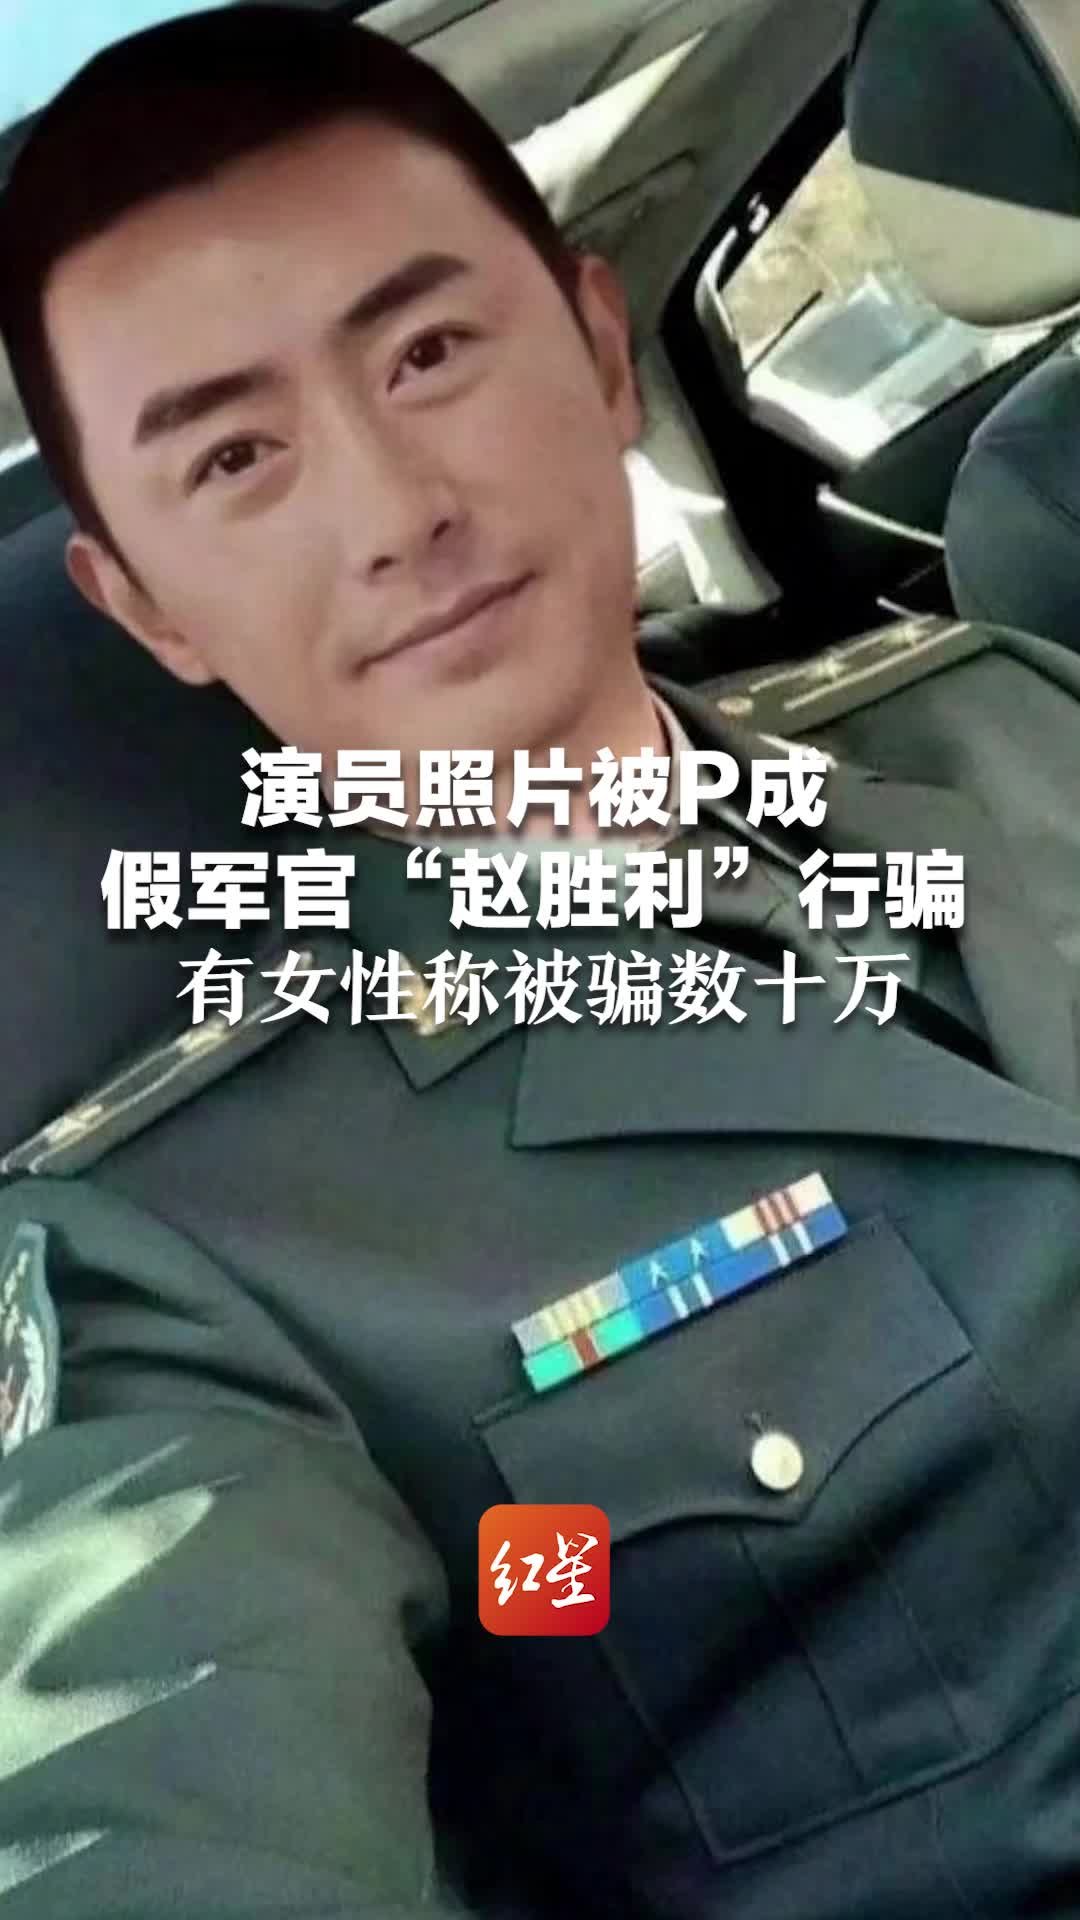 演员照片被P成假军官“赵胜利”行骗，有女性称被骗数十万